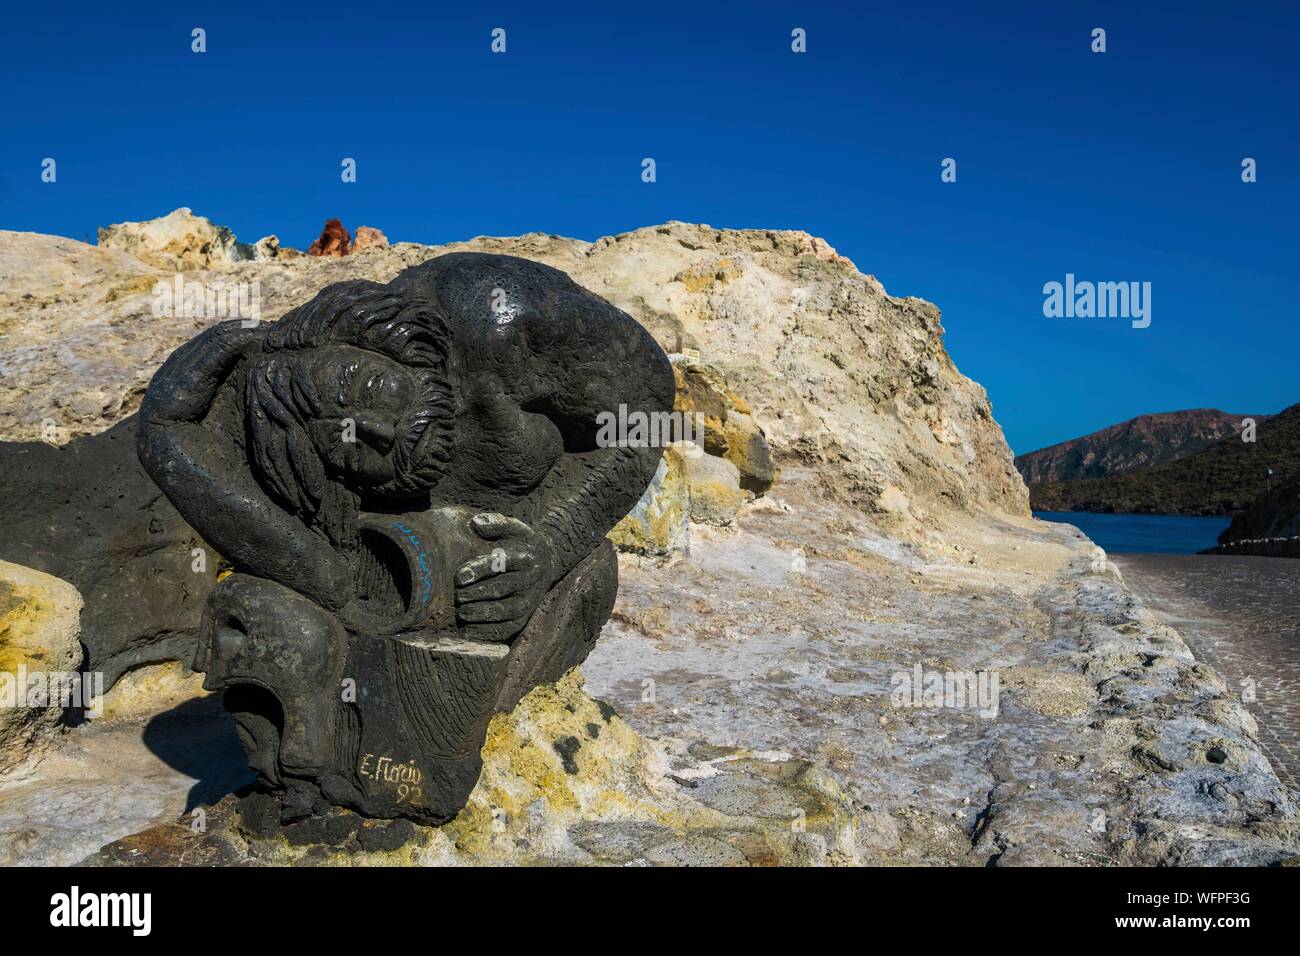 Italien, Sizilien, Liparische Inseln als Weltkulturerbe von der UNESCO, Vulcano, Porto di Levante aufgeführt, Vulcano Statue Stockfoto